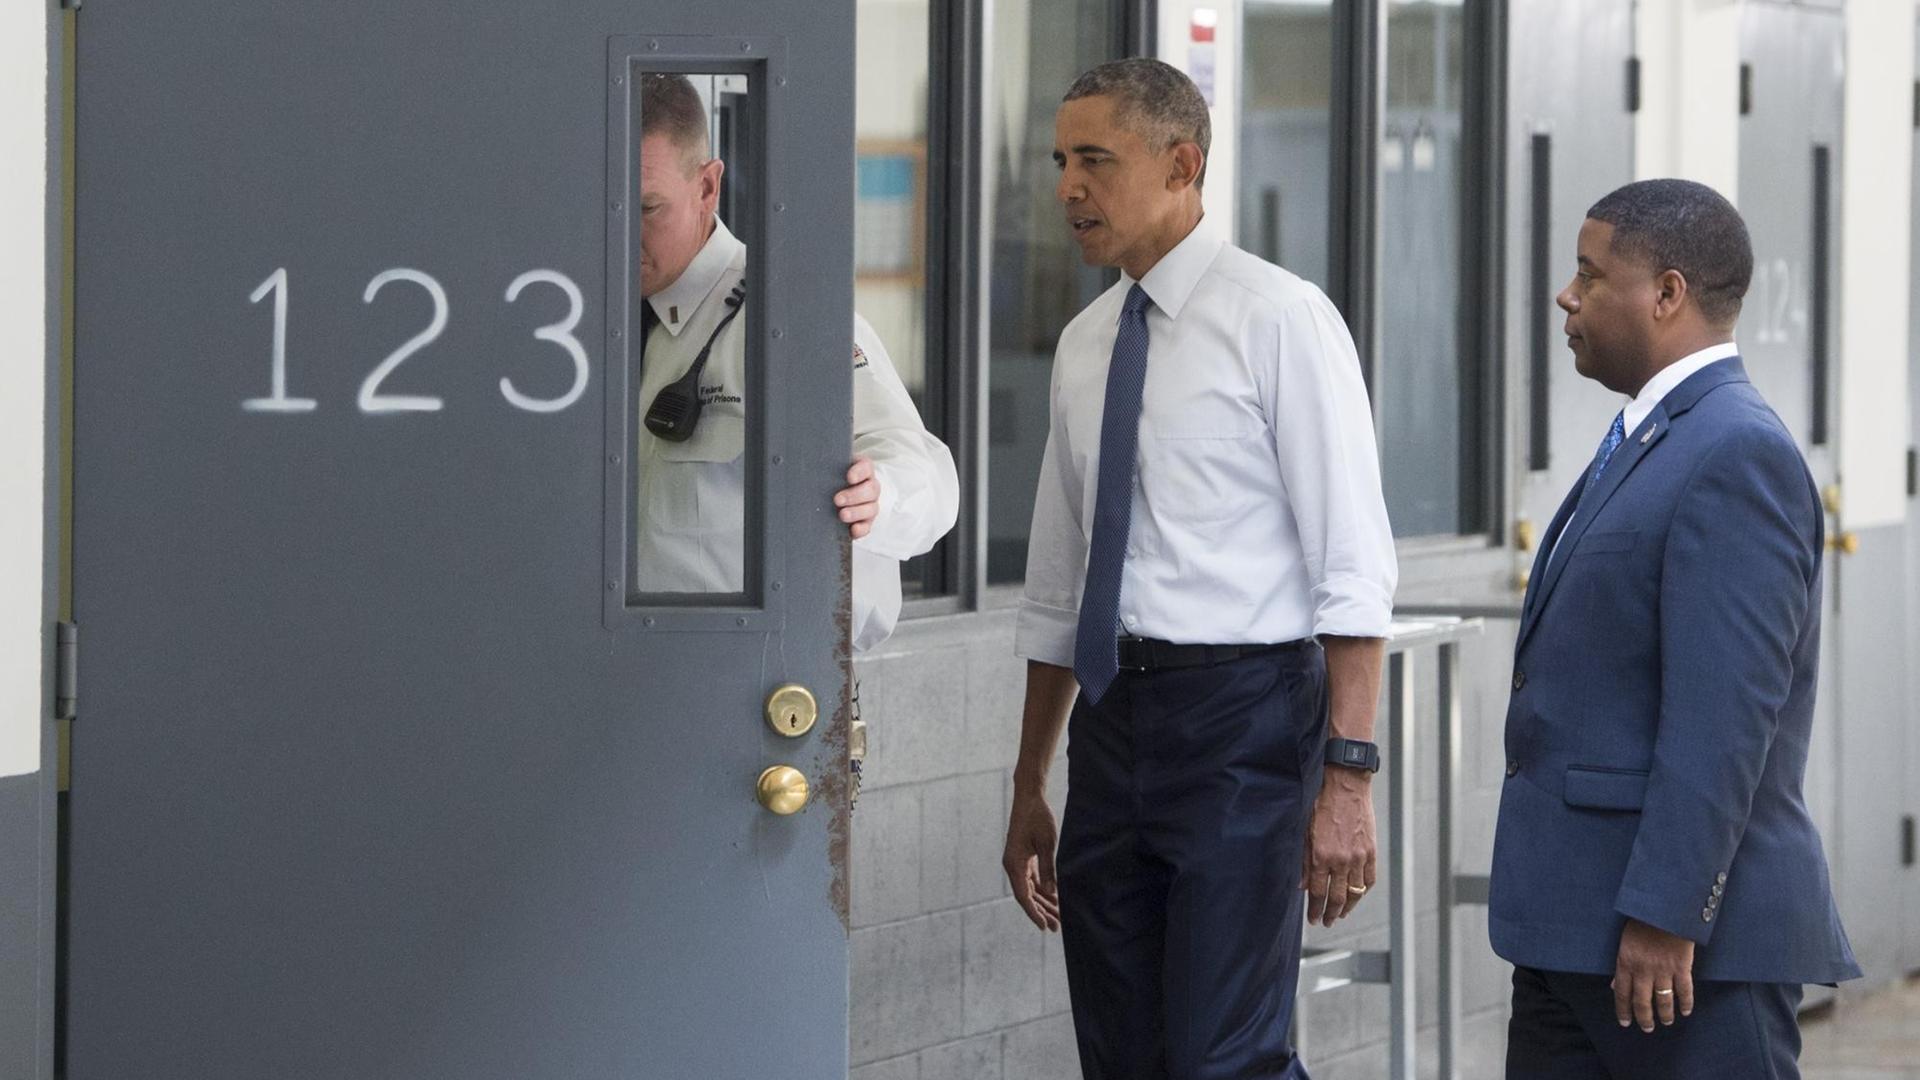 US-Präsident Barack Obama schaut sich im Gefängnis von El Reno in Oklahoma die Zelle mit der Nummer 123 an.